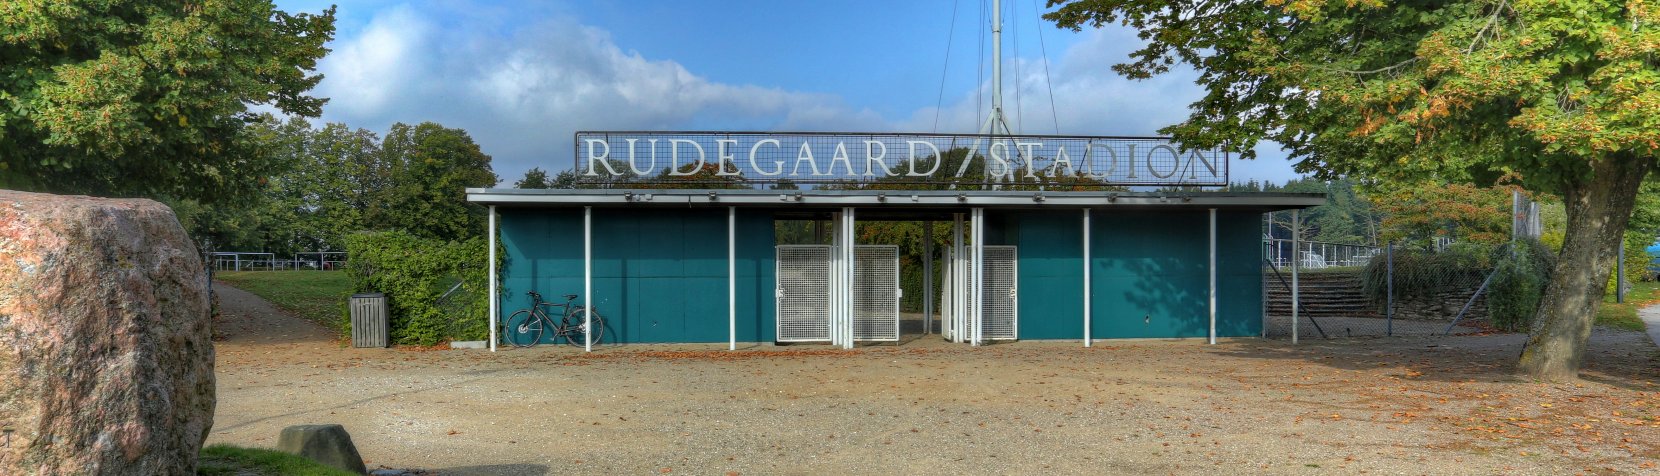 Foto: Rudegaard Stadion